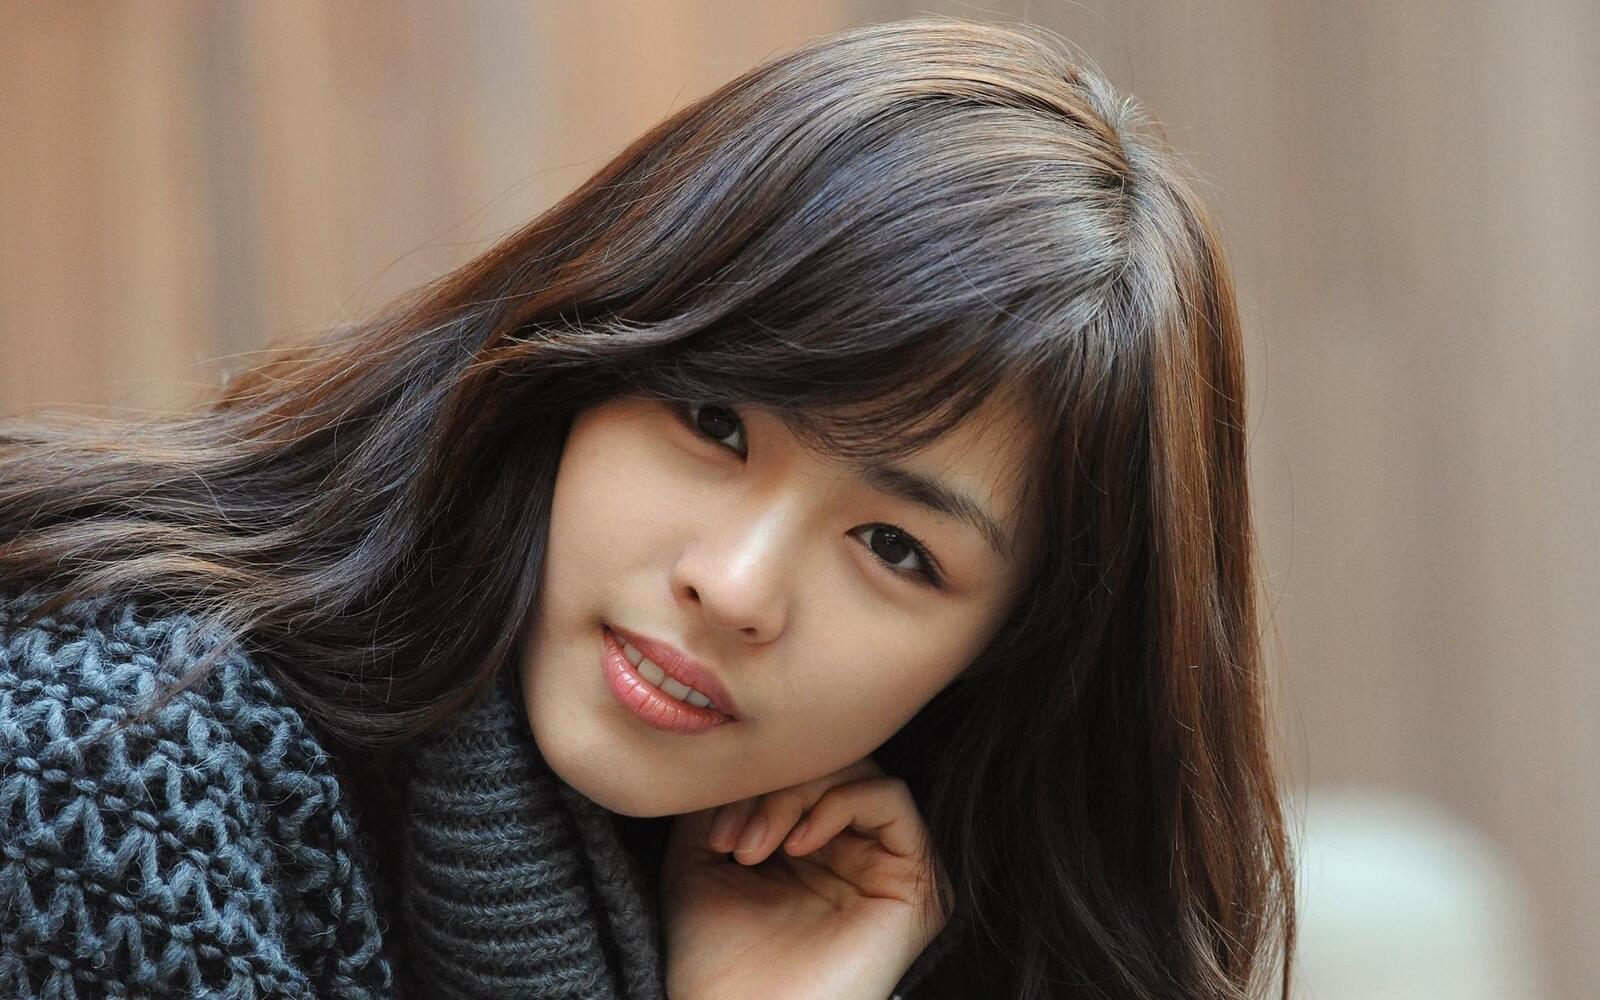 Wallpapers lee yeon hee smiling korean actress on the desktop